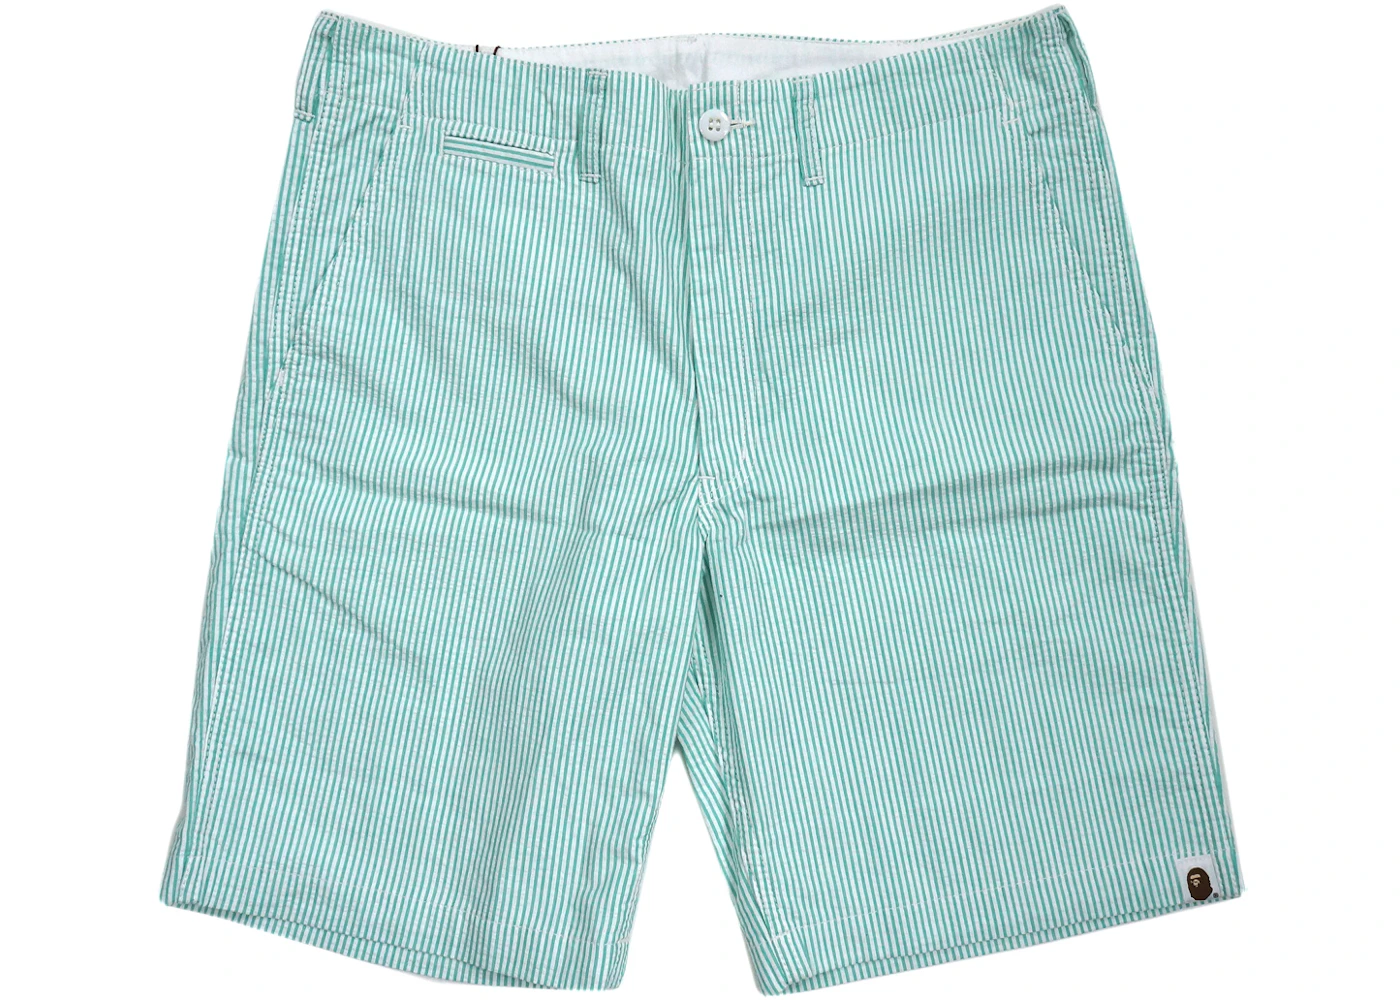 BAPE Seersucker Shorts Green Men's - US